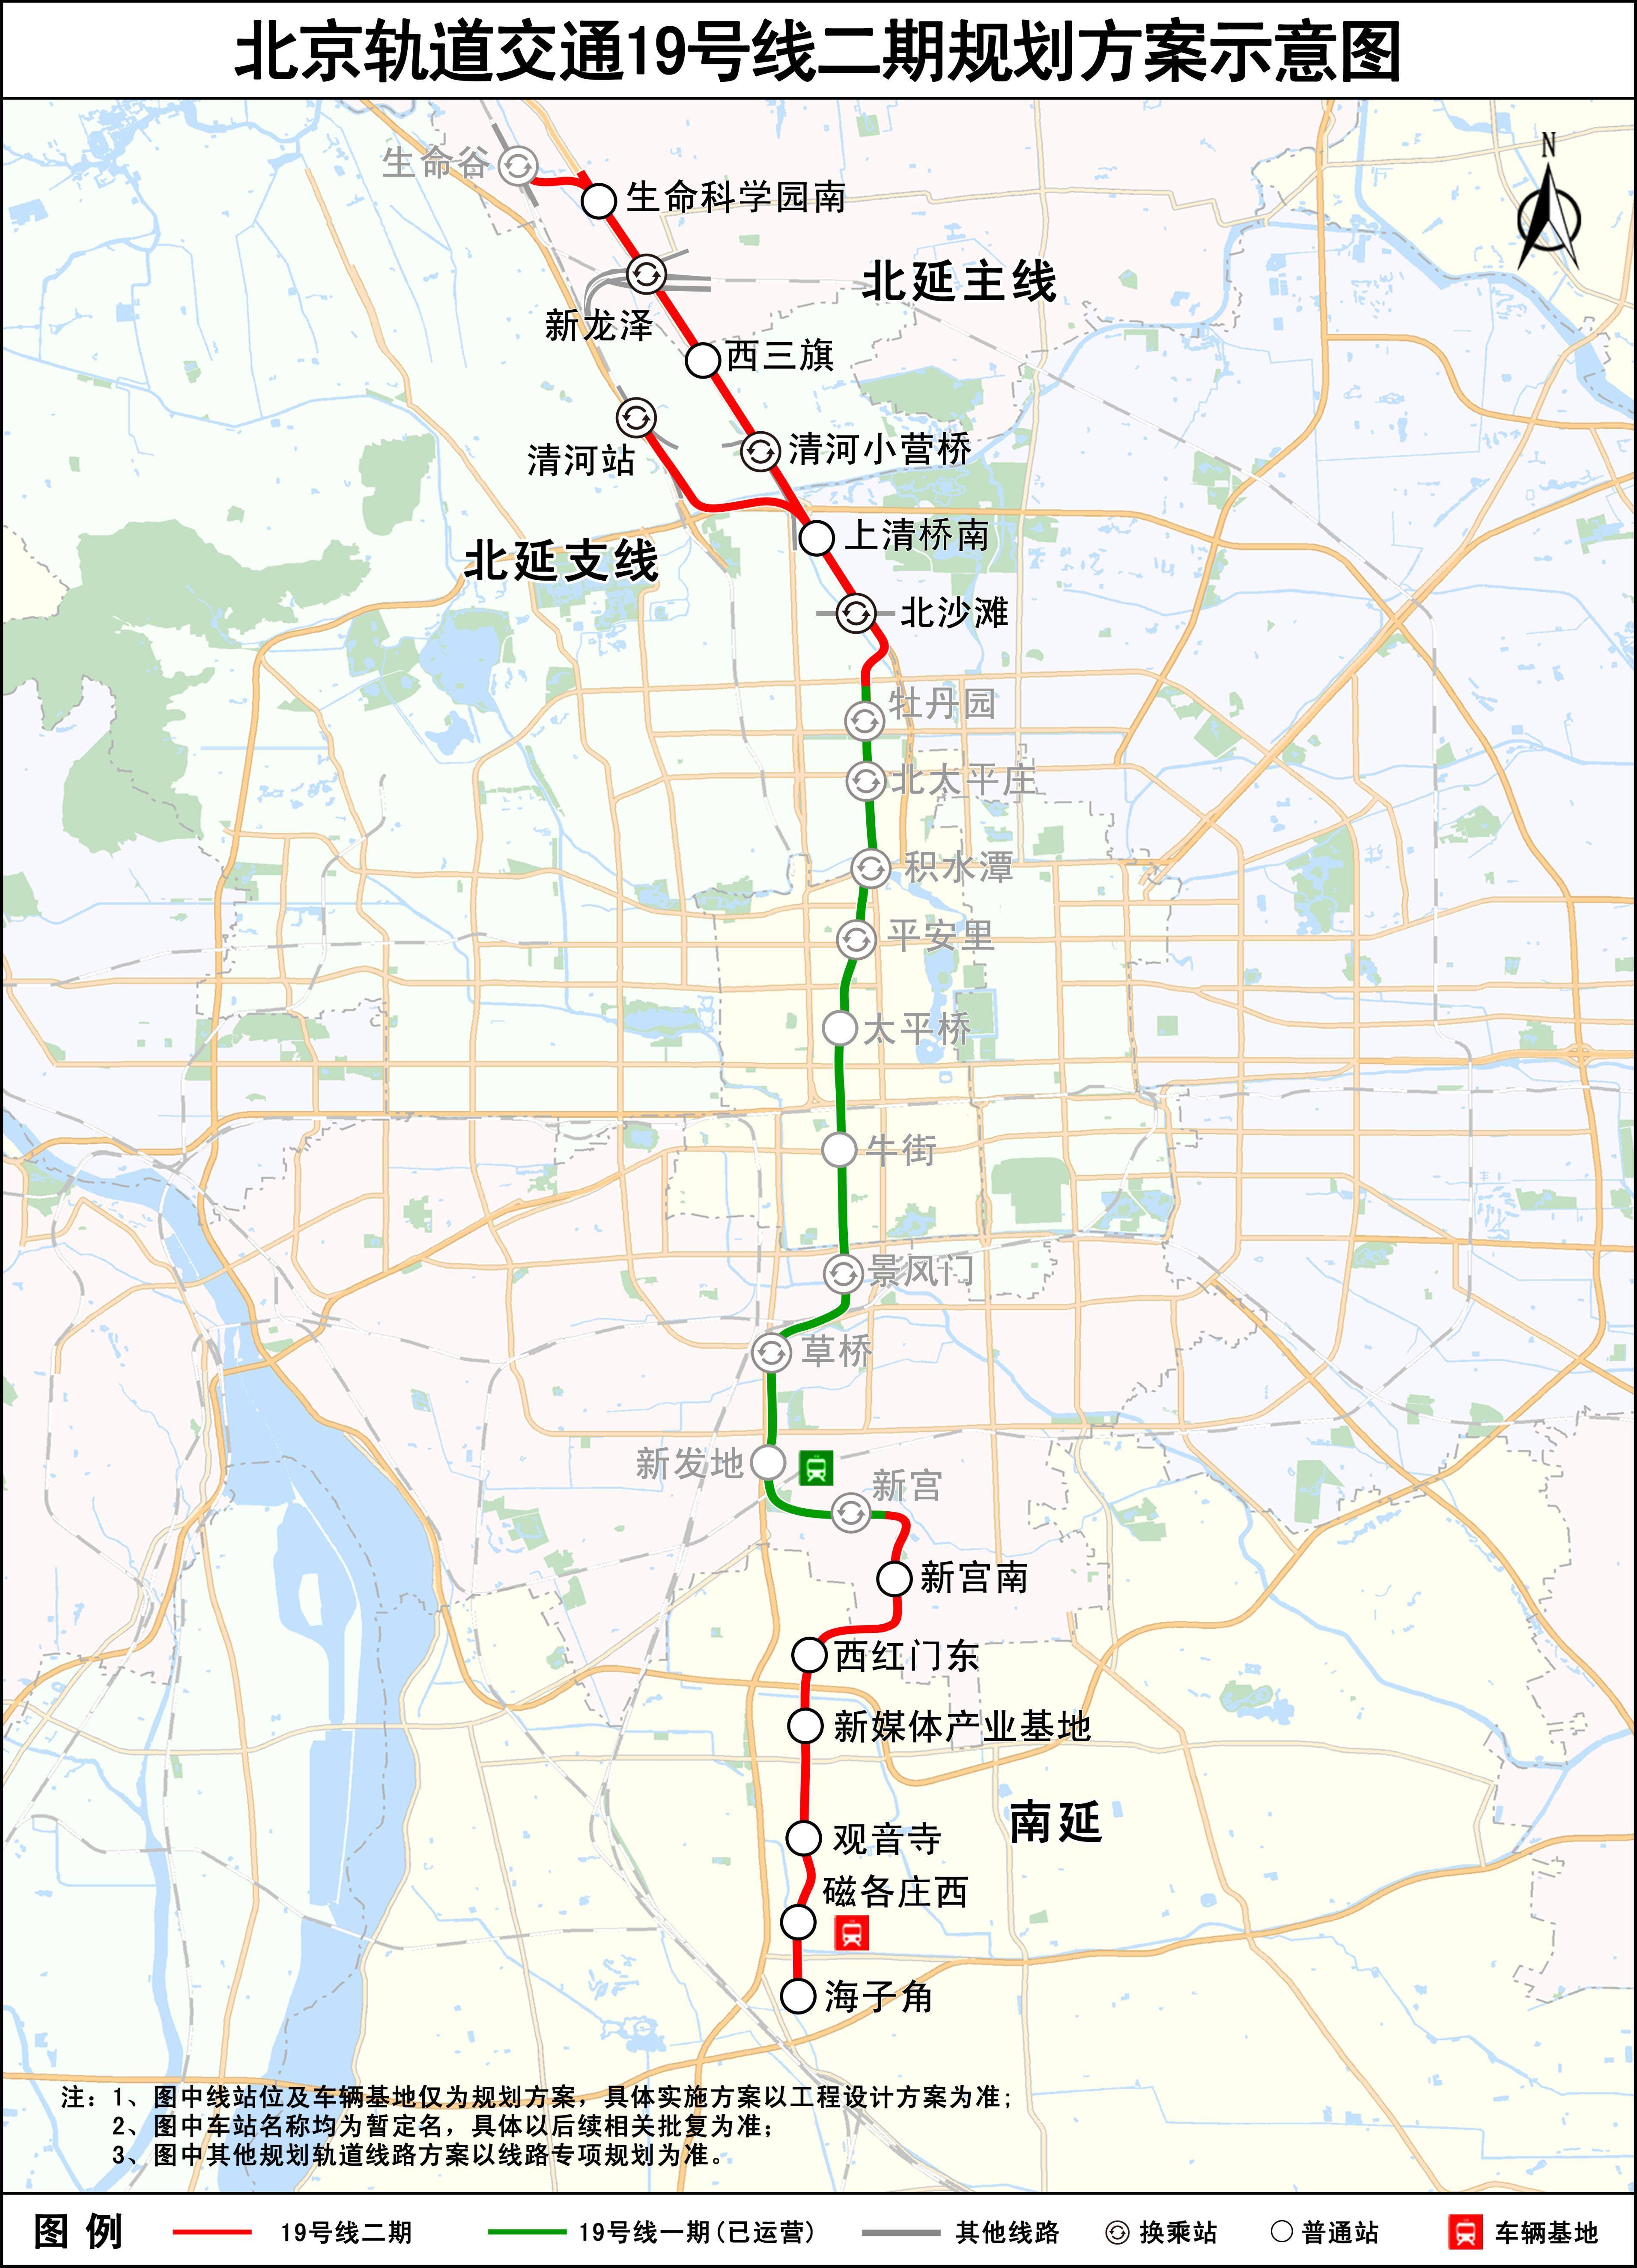 北京地铁19号线二期线路规划公示!线路图